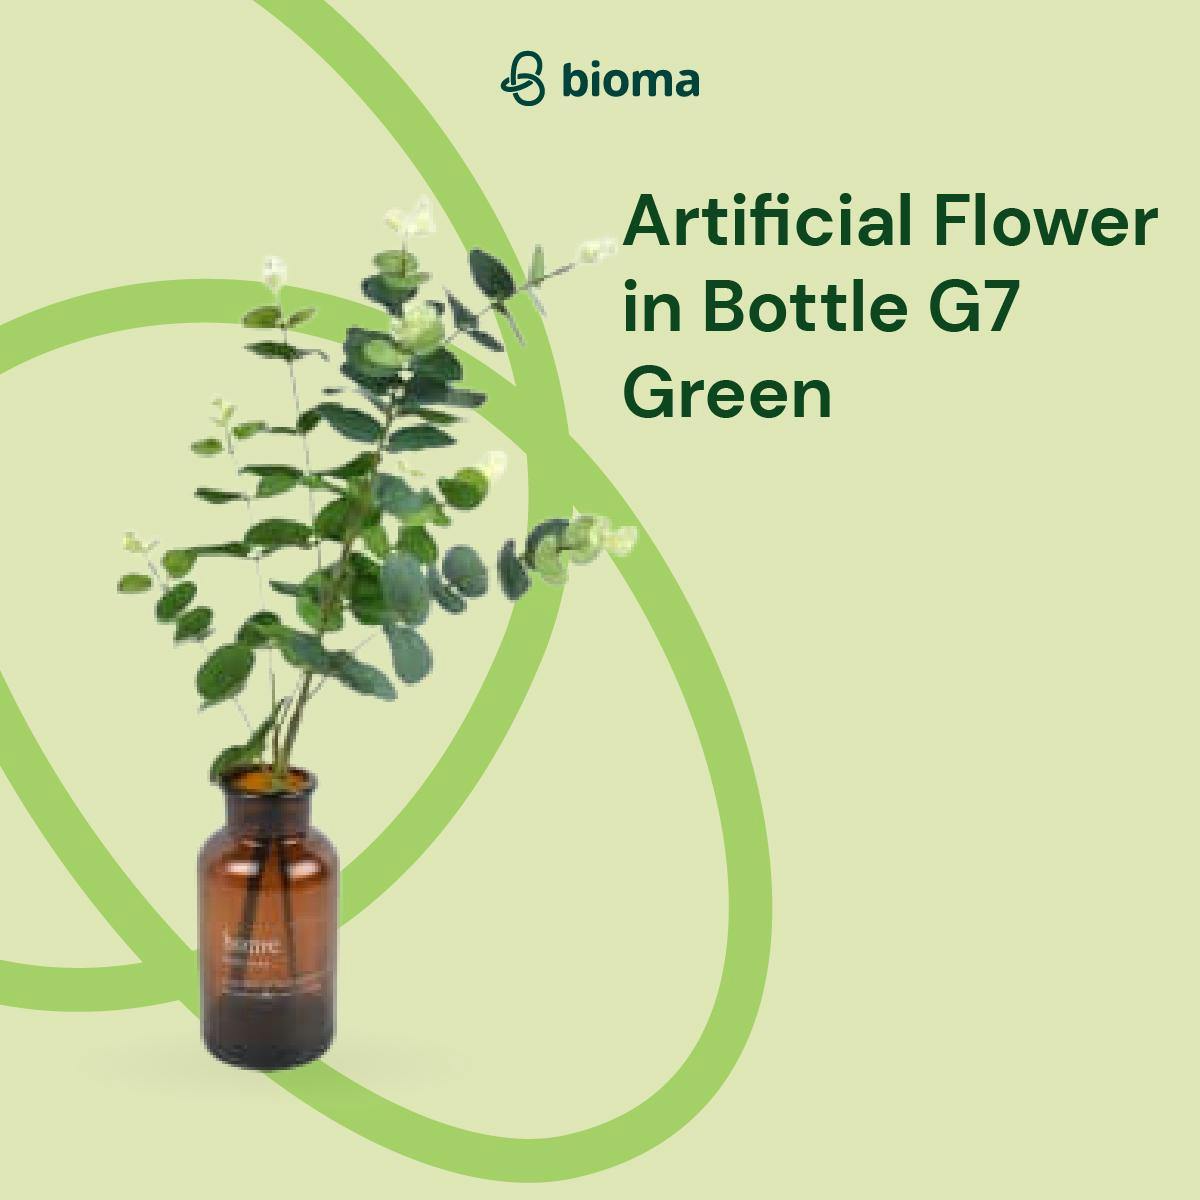 Artificial Flower in Bottle G7 Green